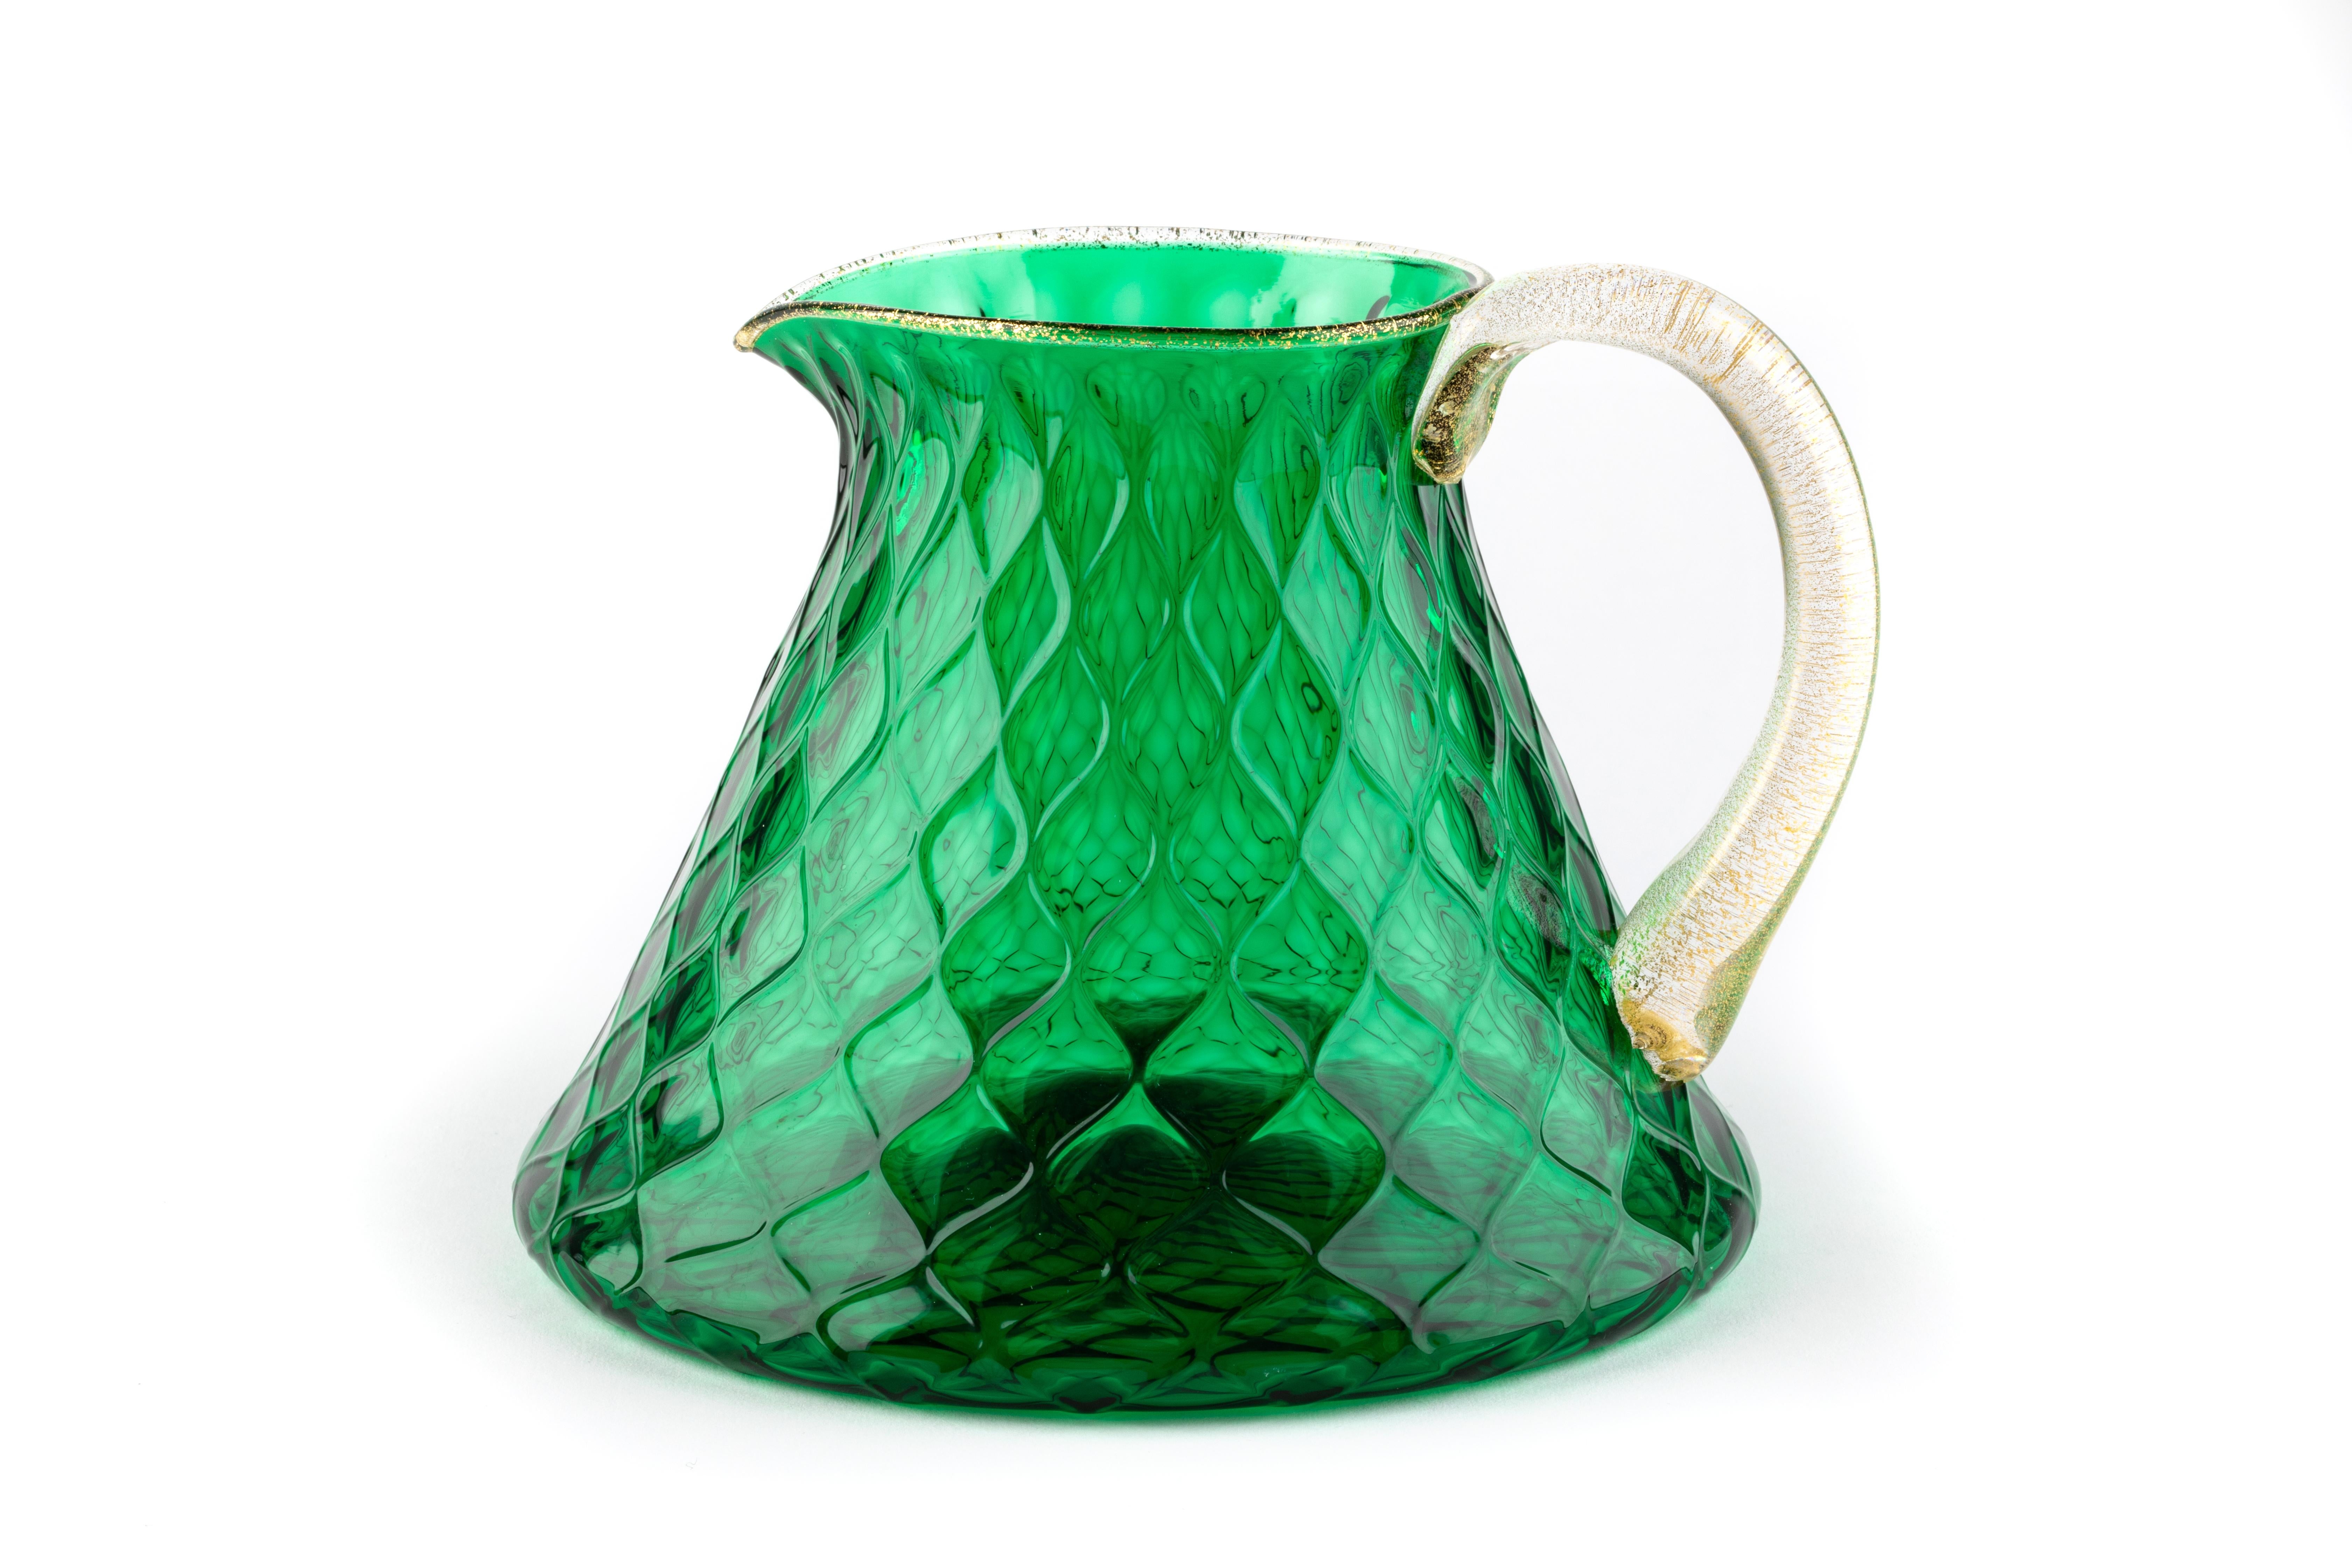 Bienvenue dans le monde exclusif de l'art du verre de Murano, où l'artisanat traditionnel rencontre l'élégance intemporelle. Nous sommes fiers de présenter notre ensemble de 6 verres et 1 carafe, une création unique réalisée à la main par des